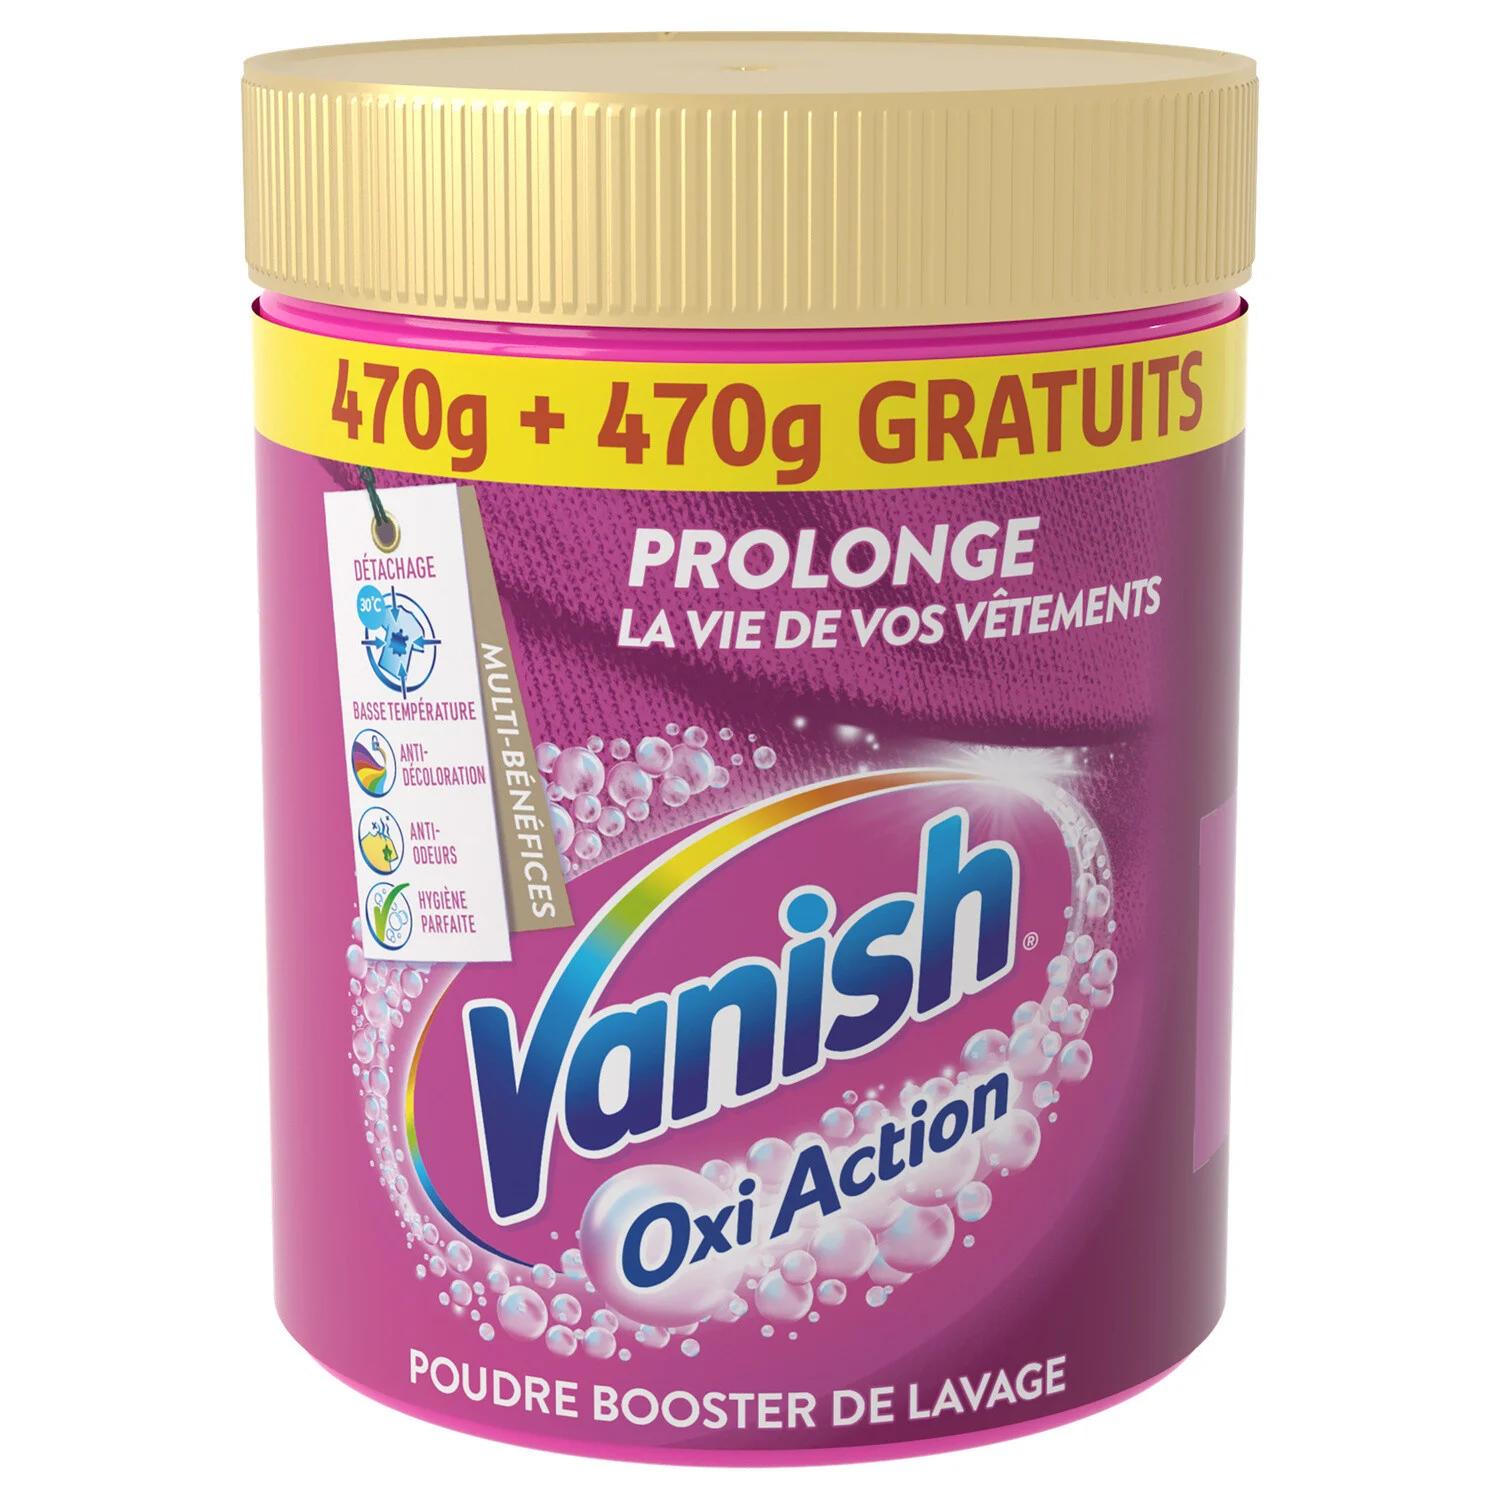 Selected image for VANISH Prašak za odstranjivanje fleka Pink gold oxi action 940g